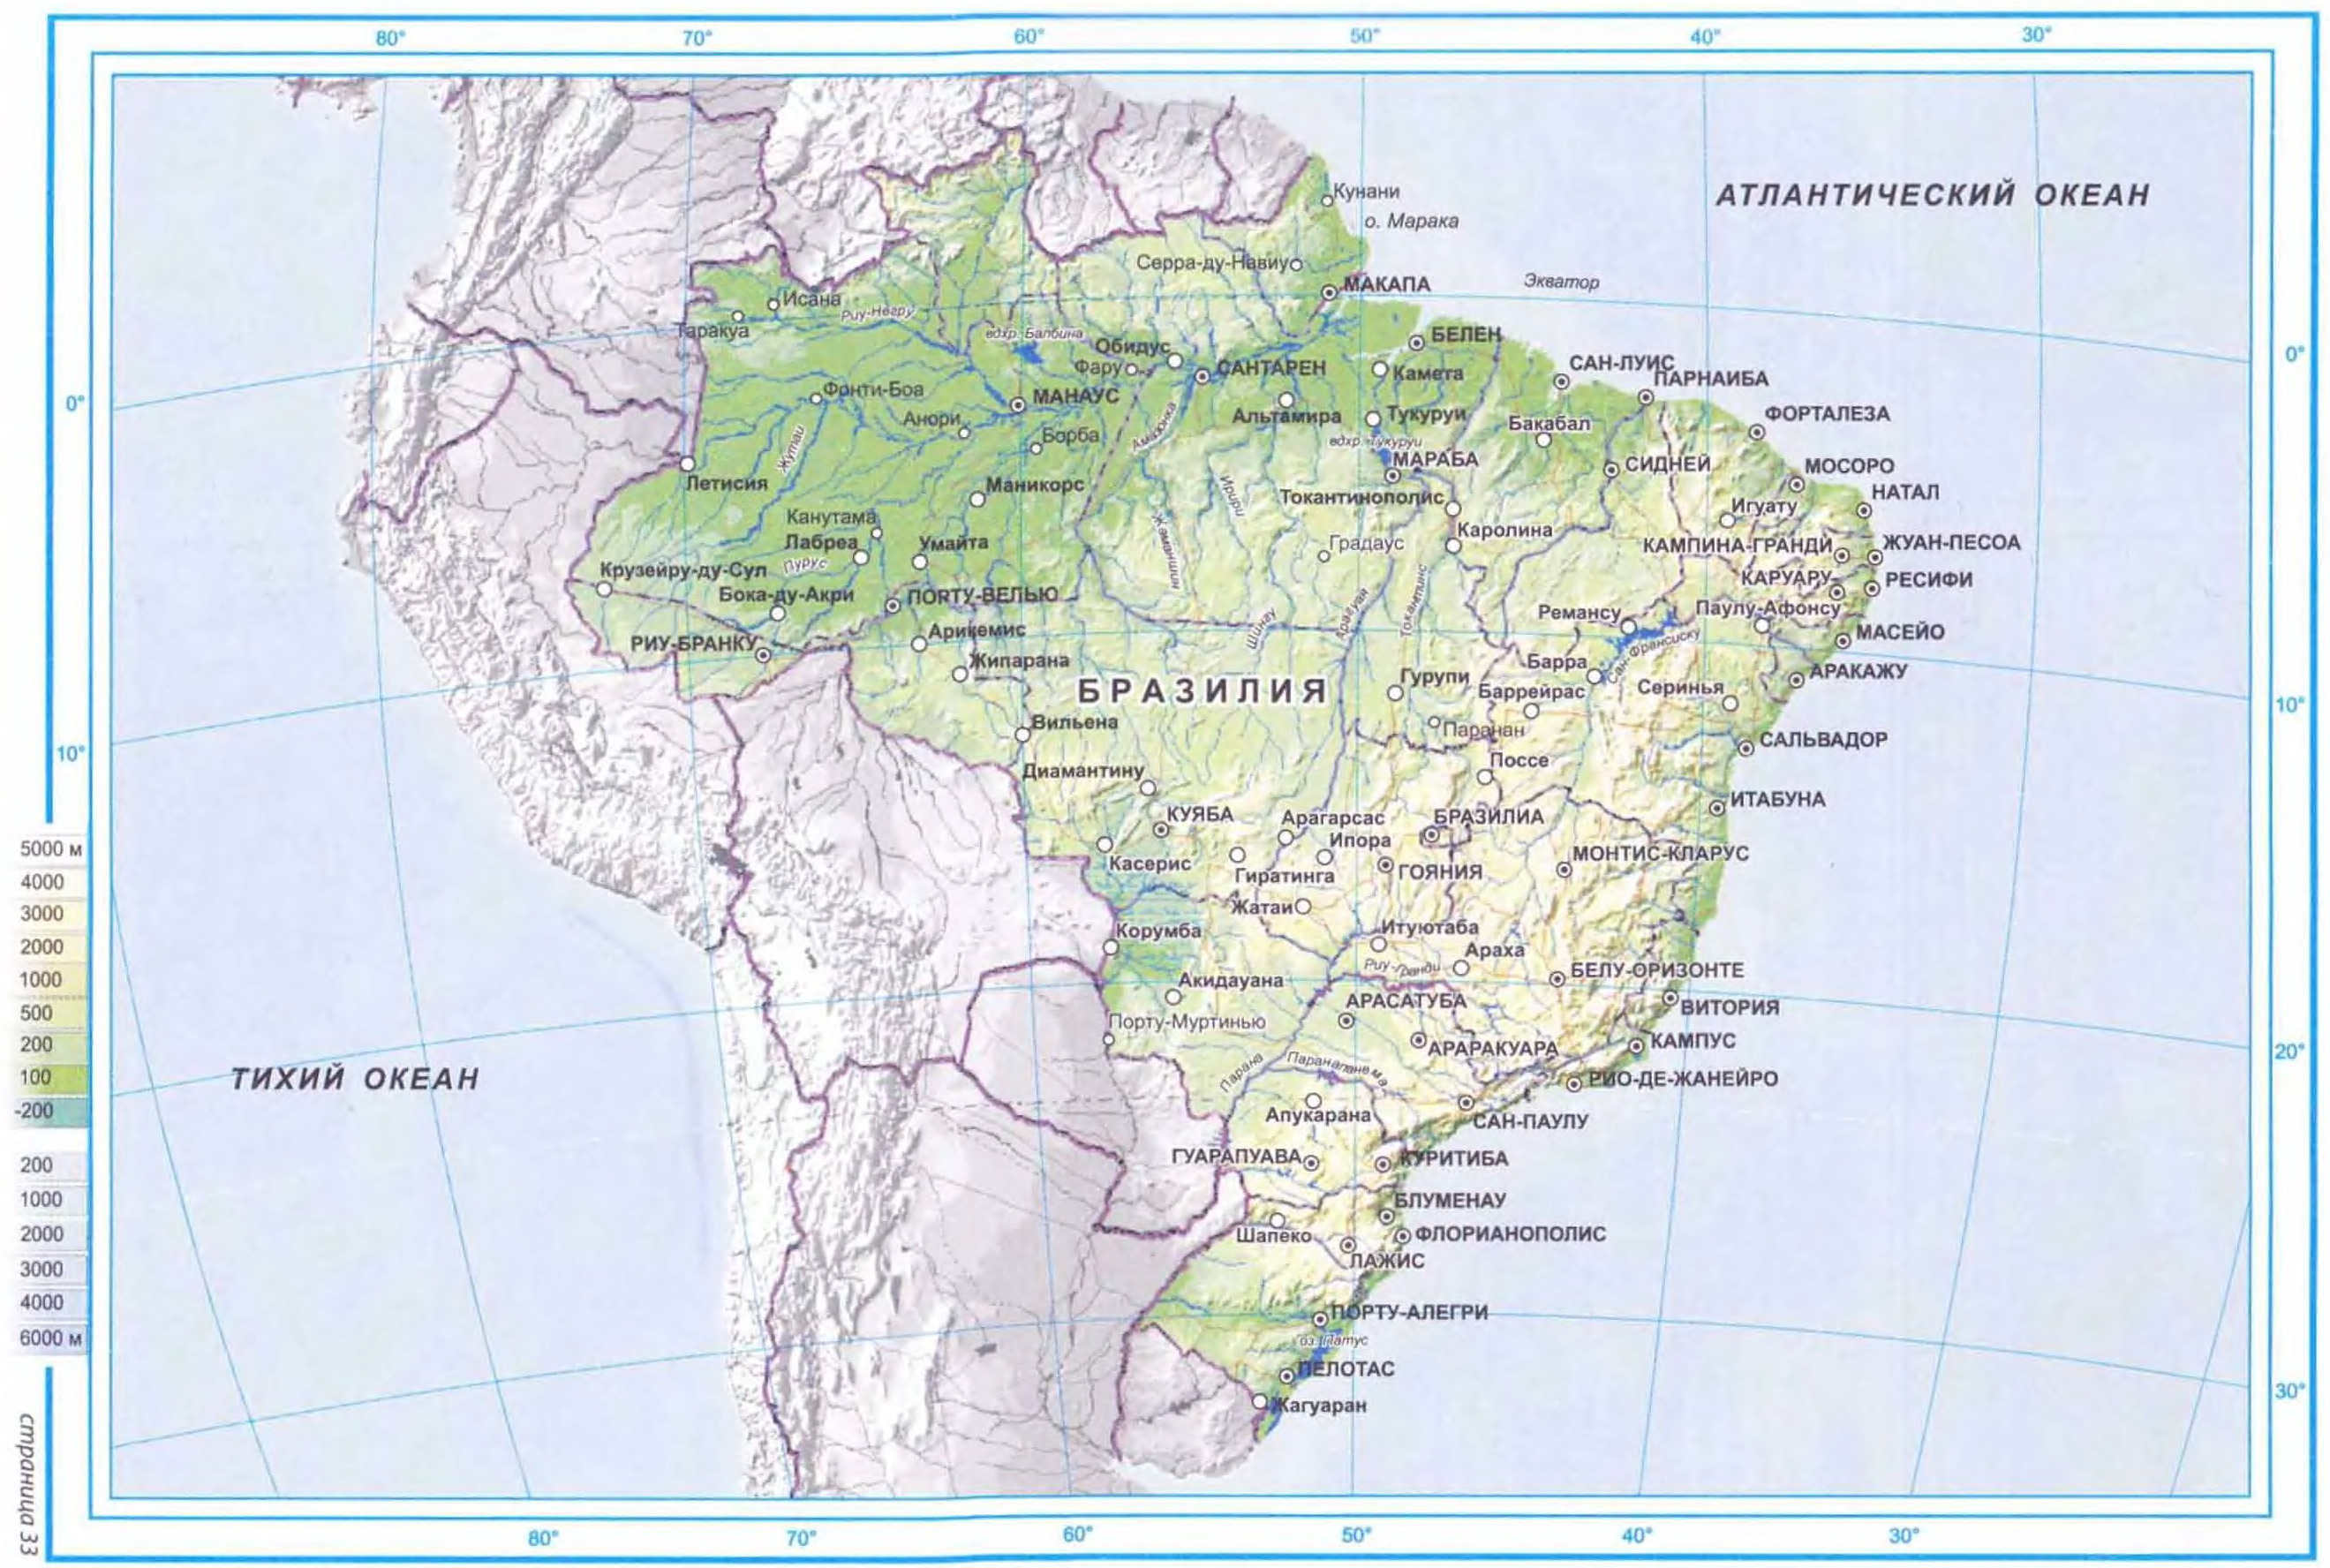 (Brazil)